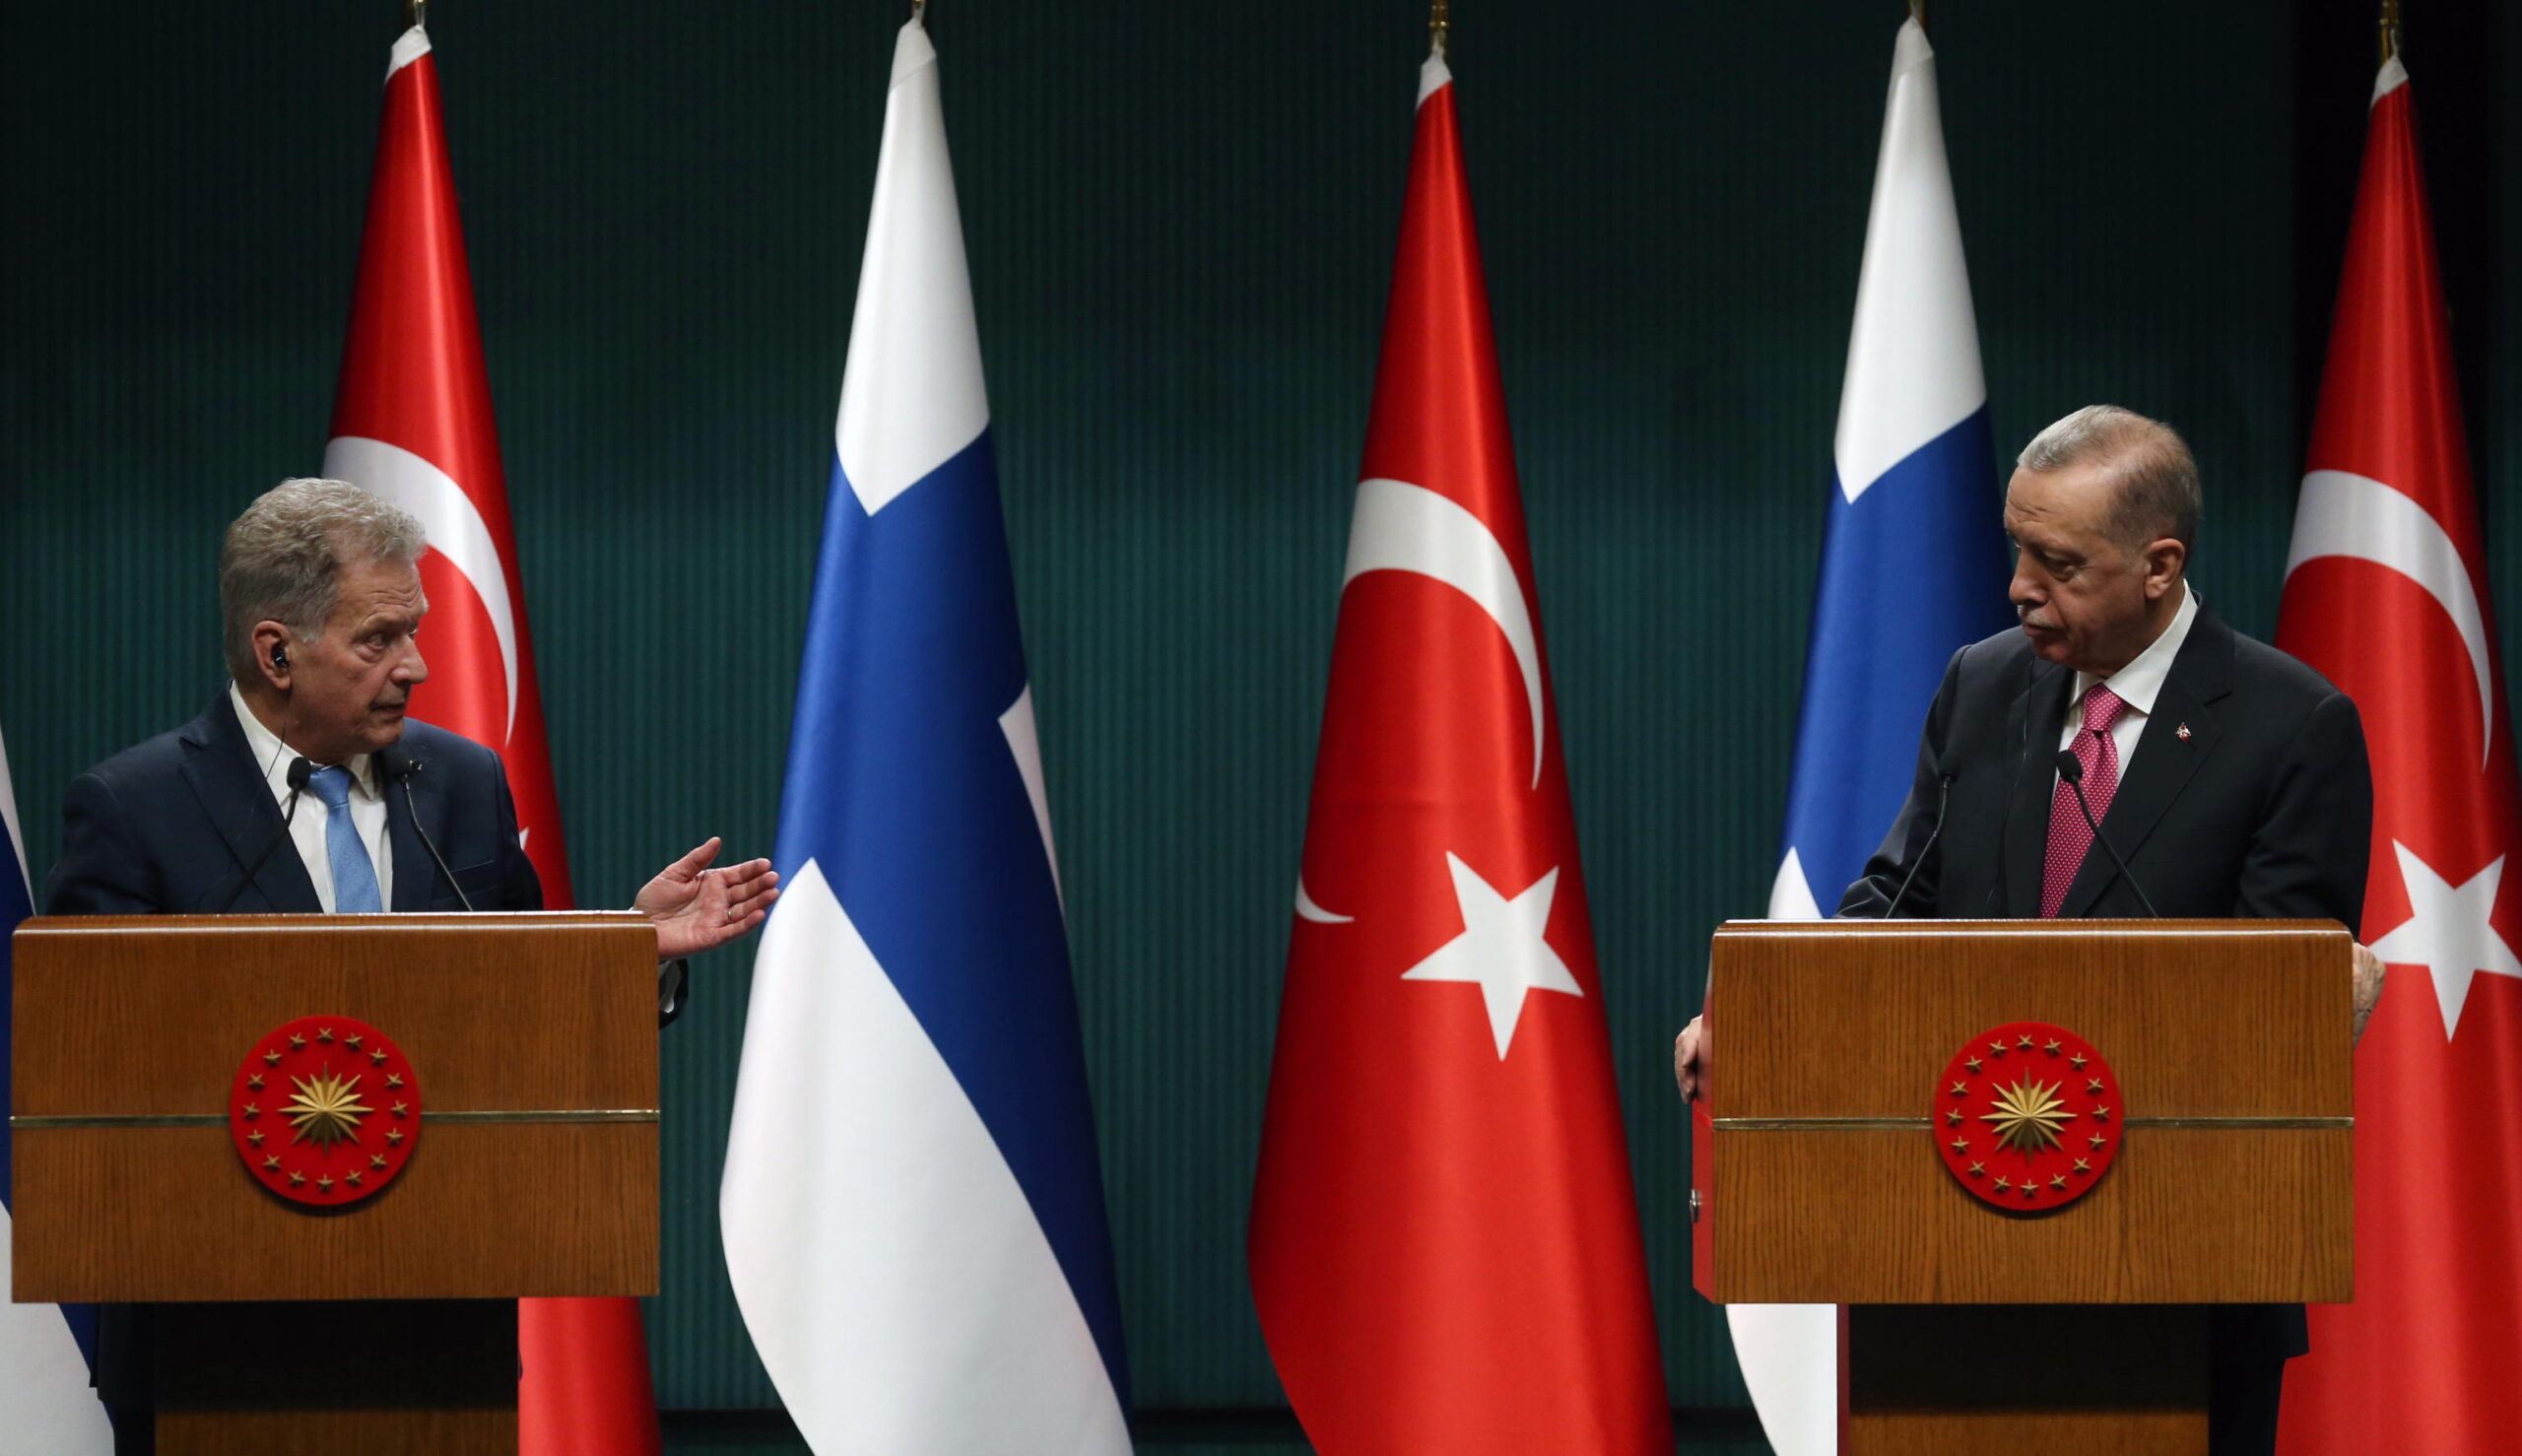 Adesione alla Nato, il parlamento turco dà il via libera alla Finlandia: è il 31esimo paese a entrare nell’Alleanza Atlantica